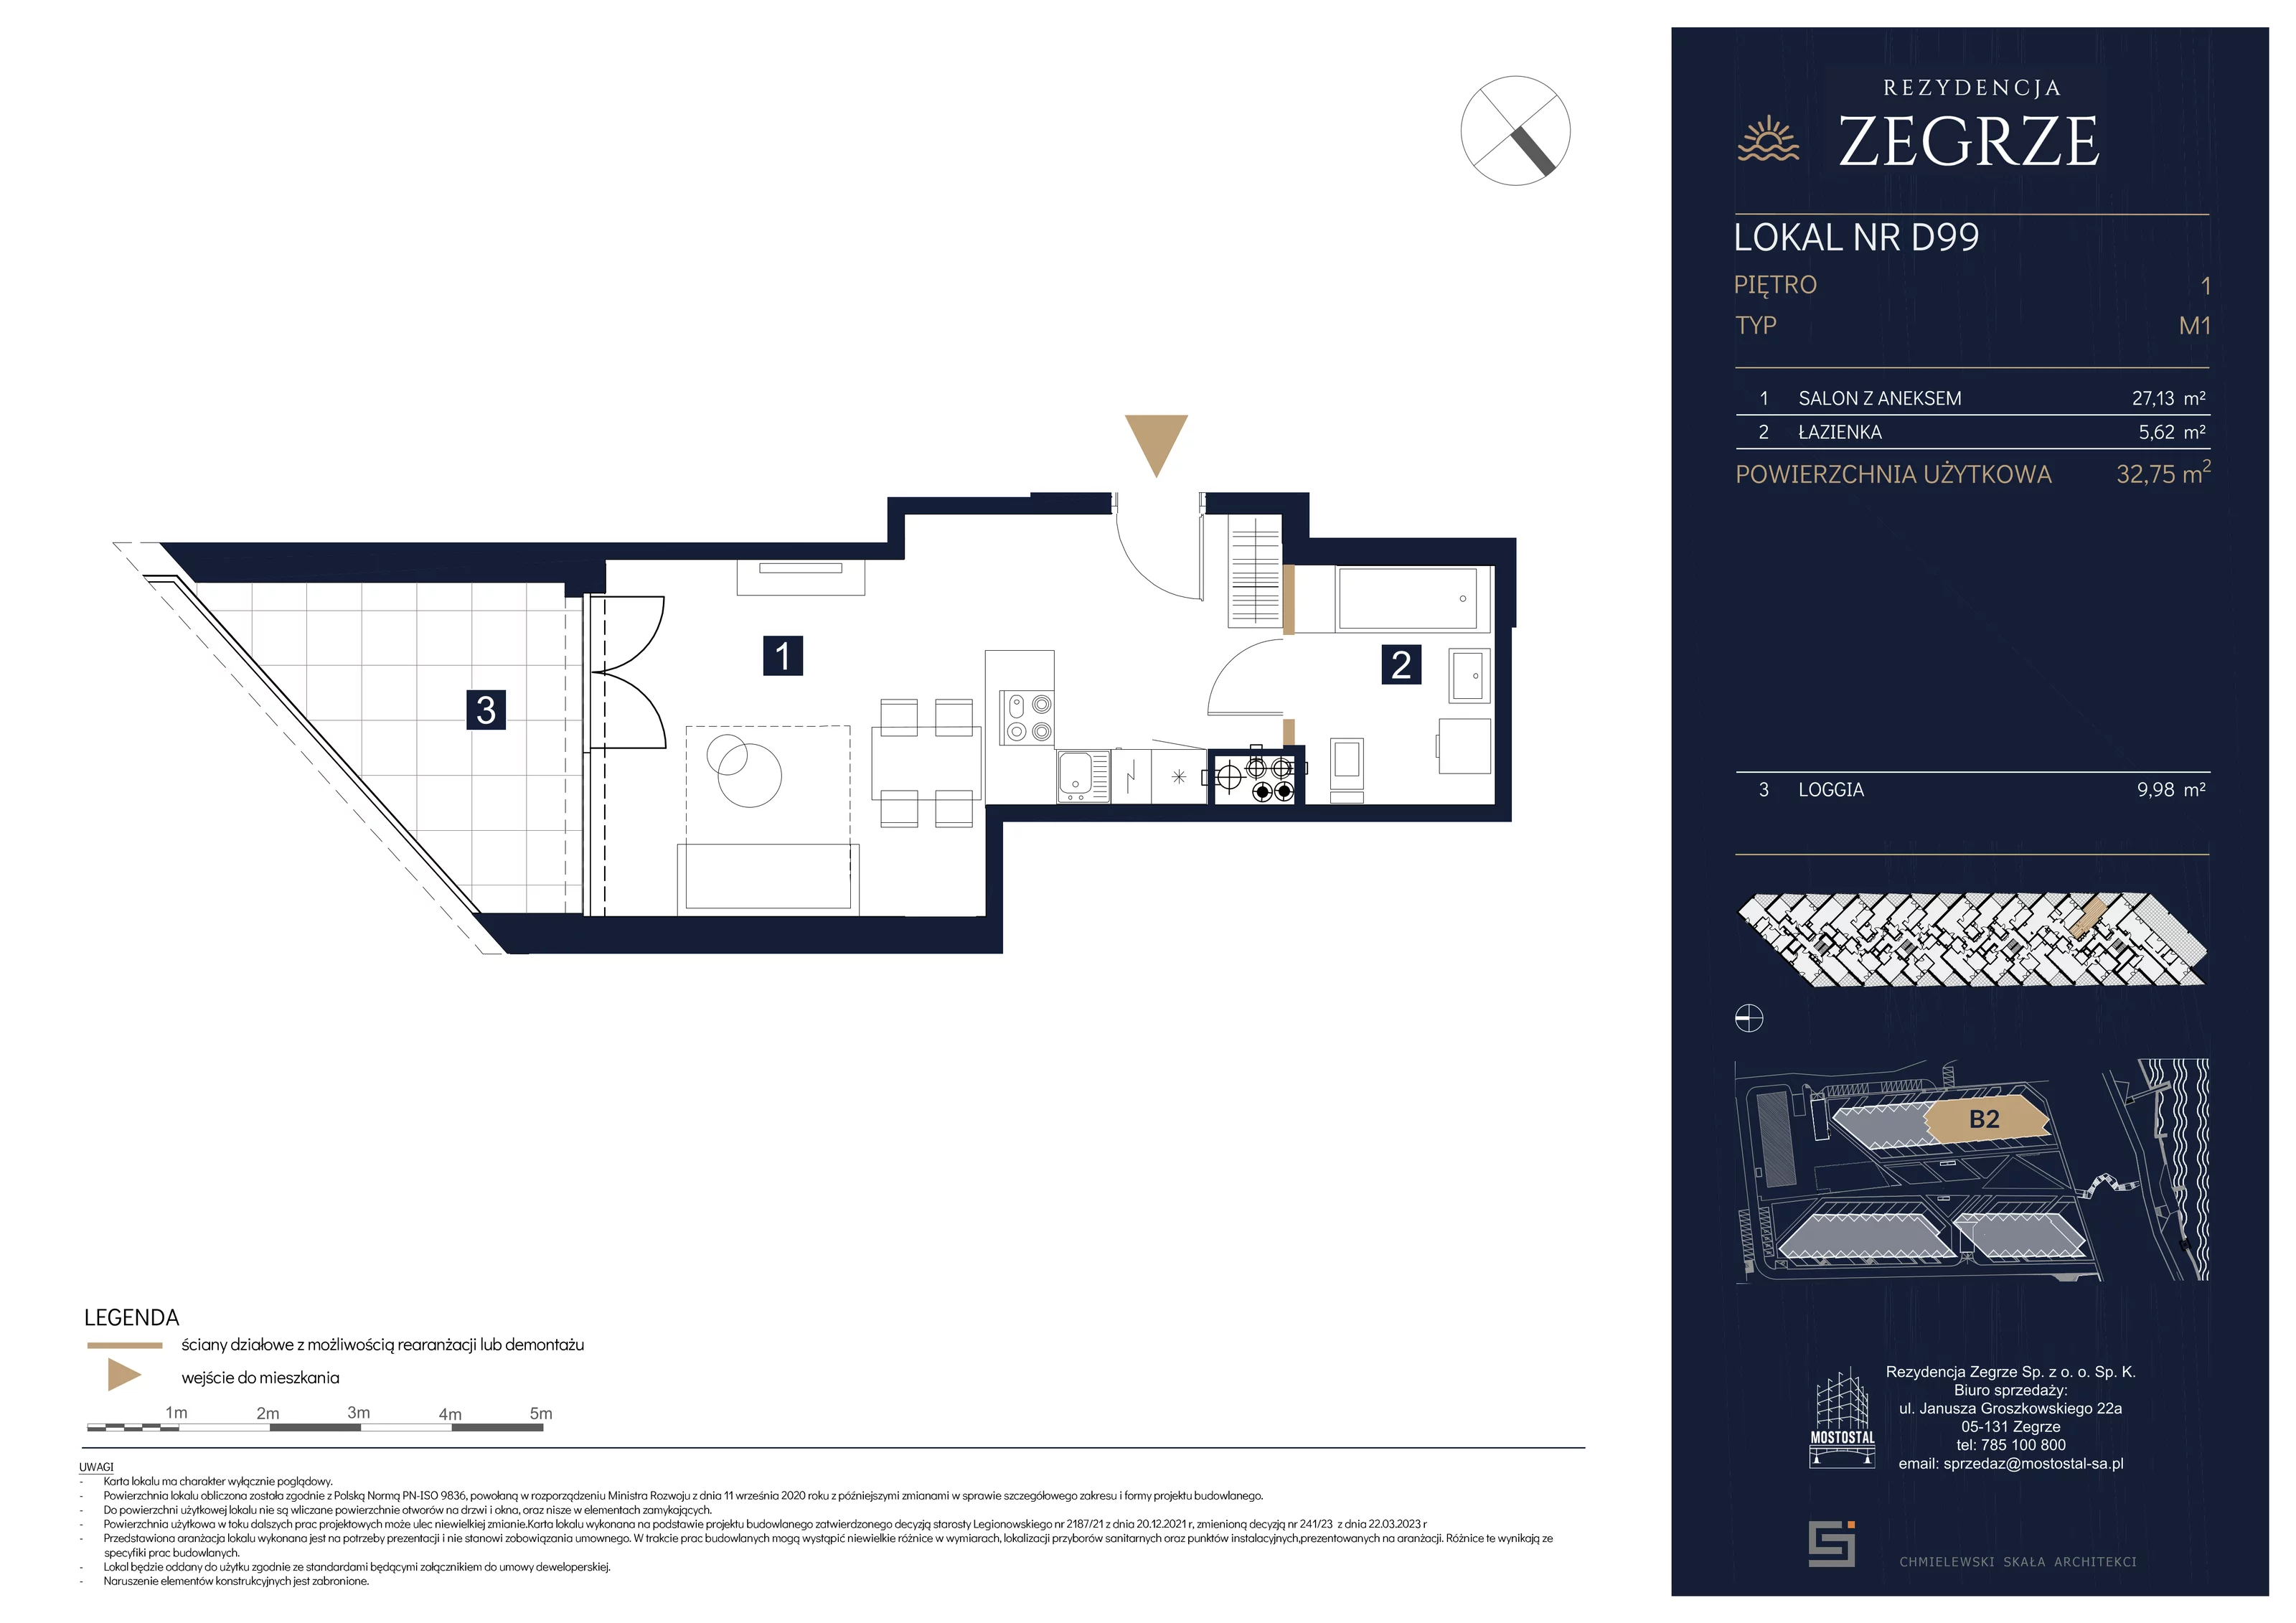 Mieszkanie 32,75 m², piętro 1, oferta nr B2.2.D.99, Rezydencja Zegrze II, Zegrze, ul. Groszkowskiego 22A